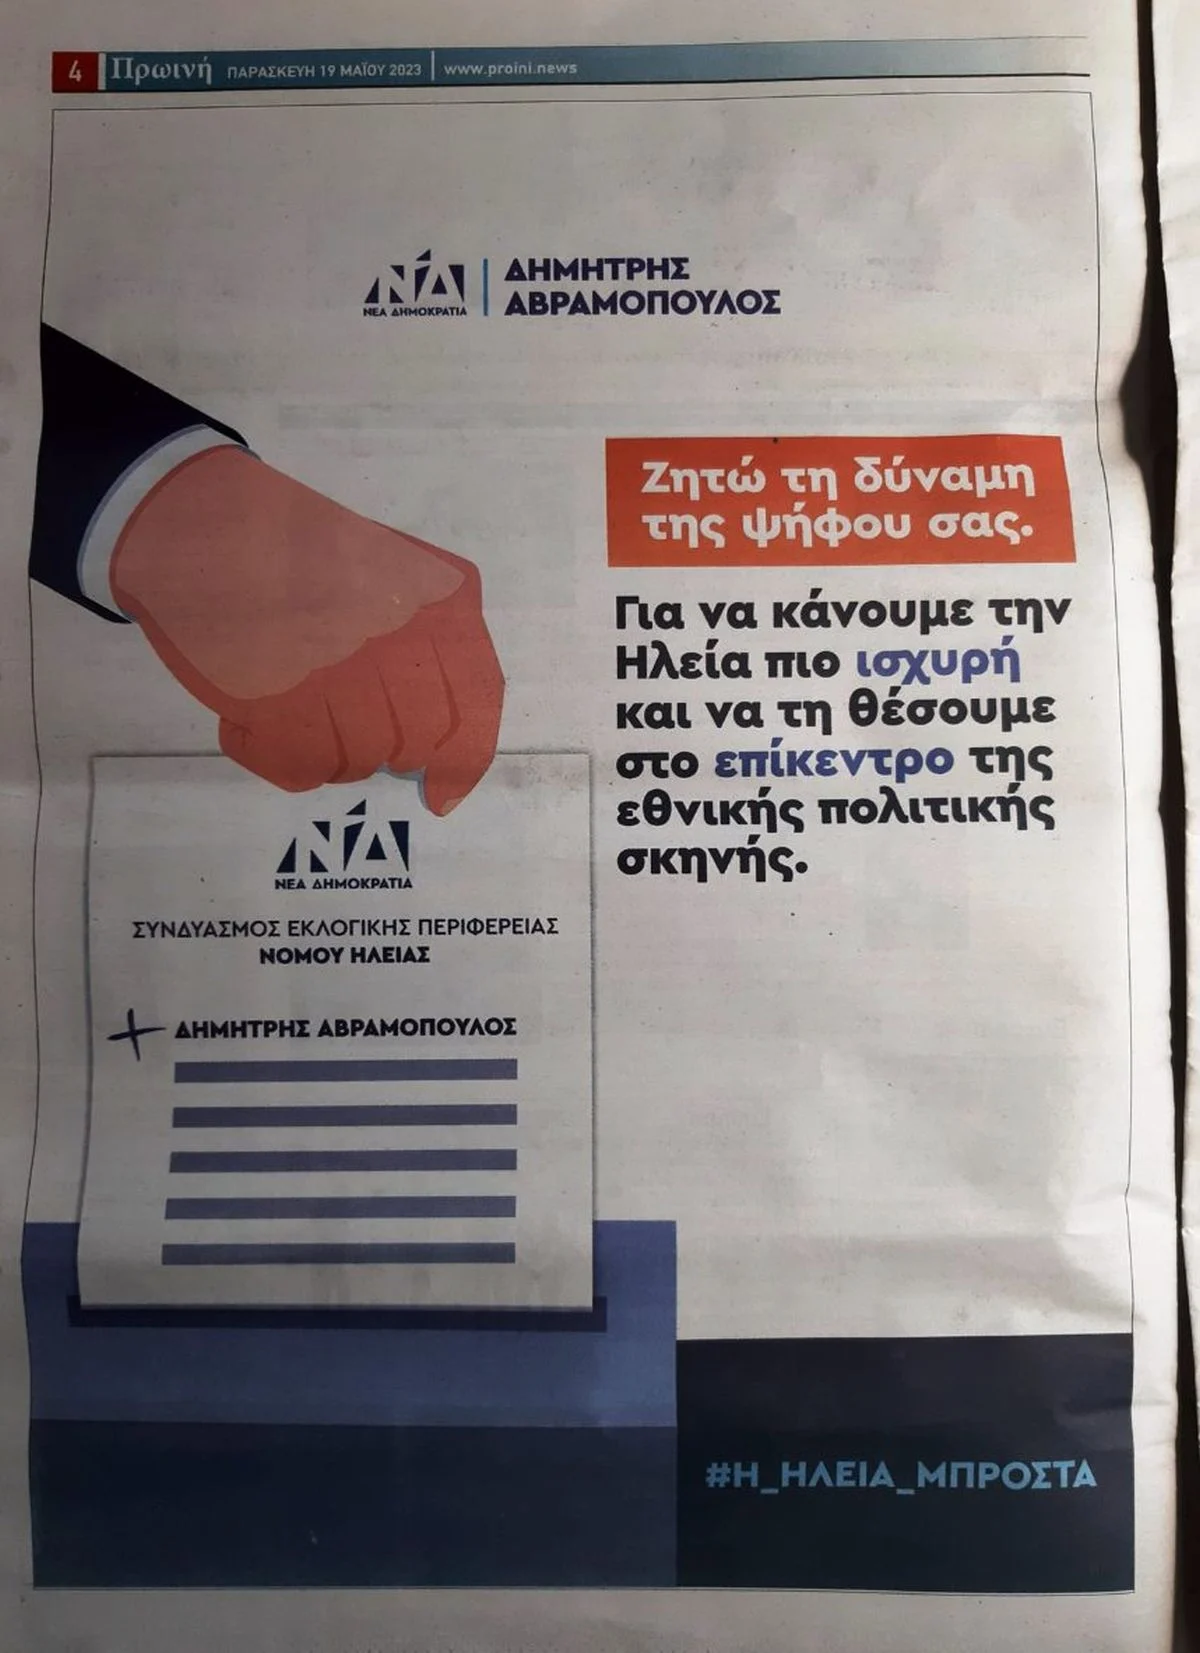 Σάλος στους ψηφοφόρους της ΝΔ στην Ηλεία με την διαφήμιση του Δ.Αβραμόπουλου